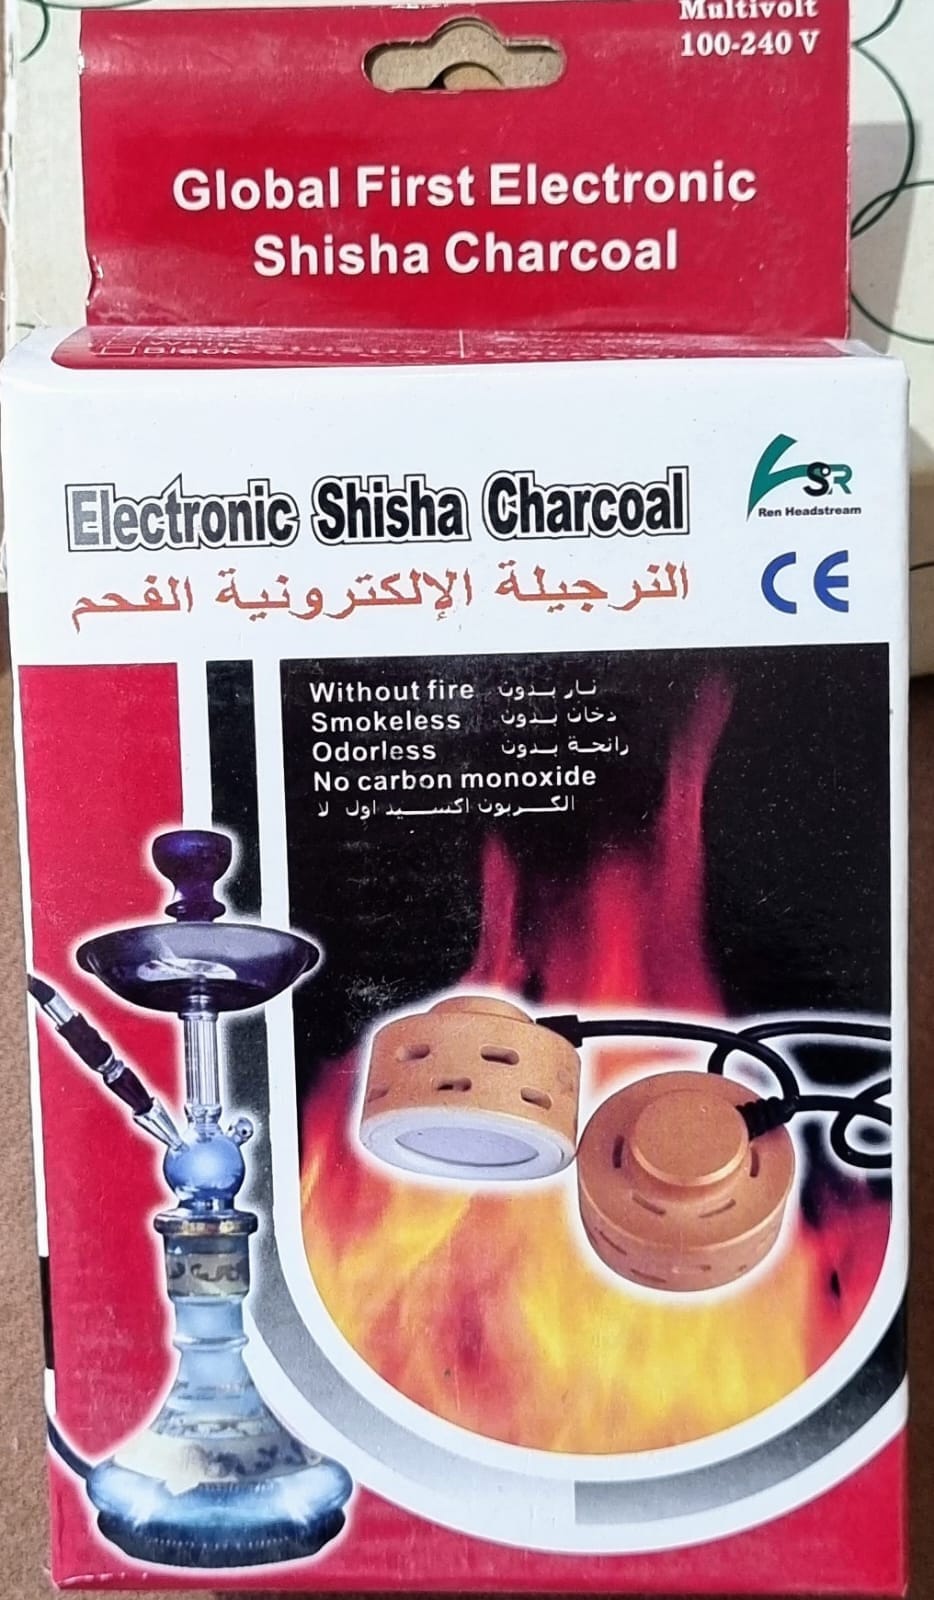 50 Carboni SHISHA Carboncini Carbone narghilè per SHISHA narghile charcoal